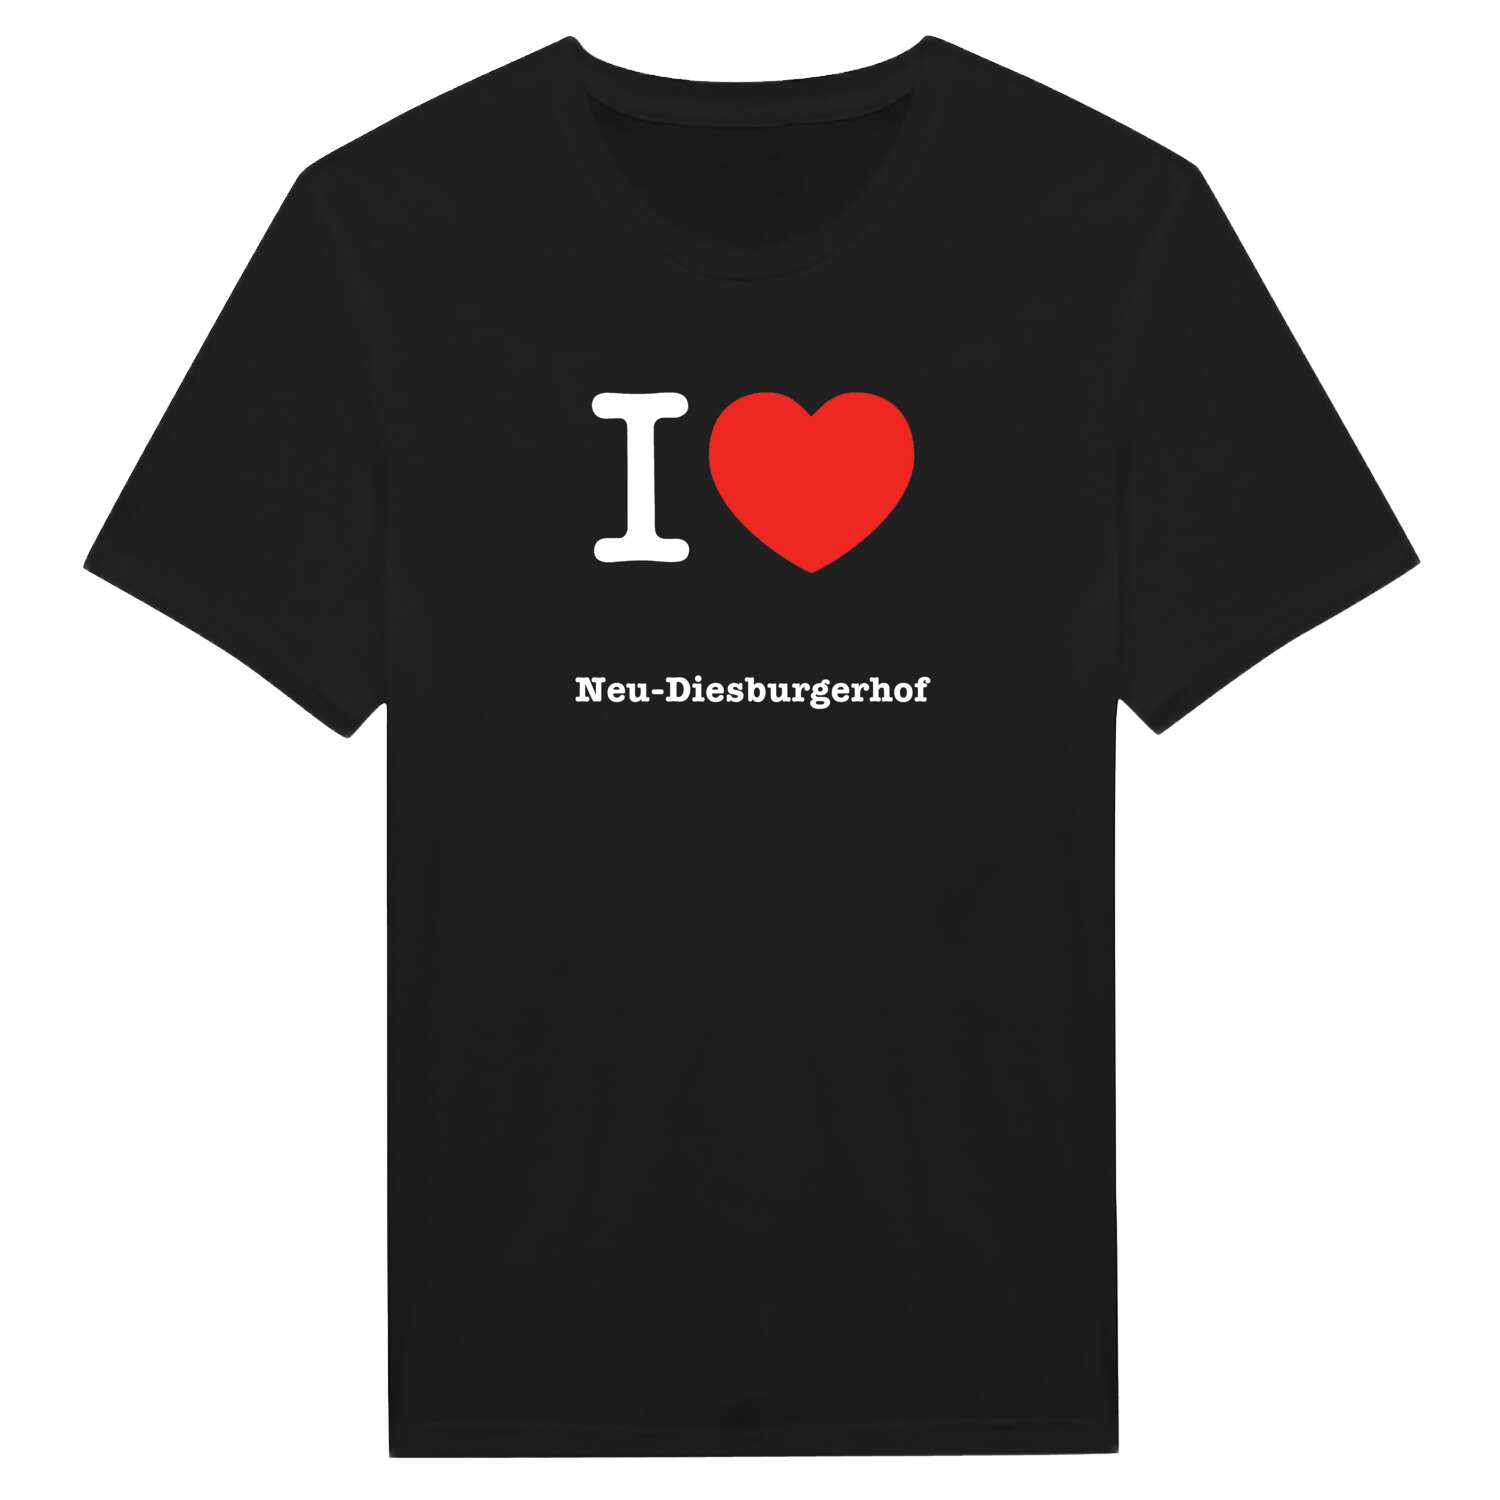 Neu-Diesburgerhof T-Shirt »I love«